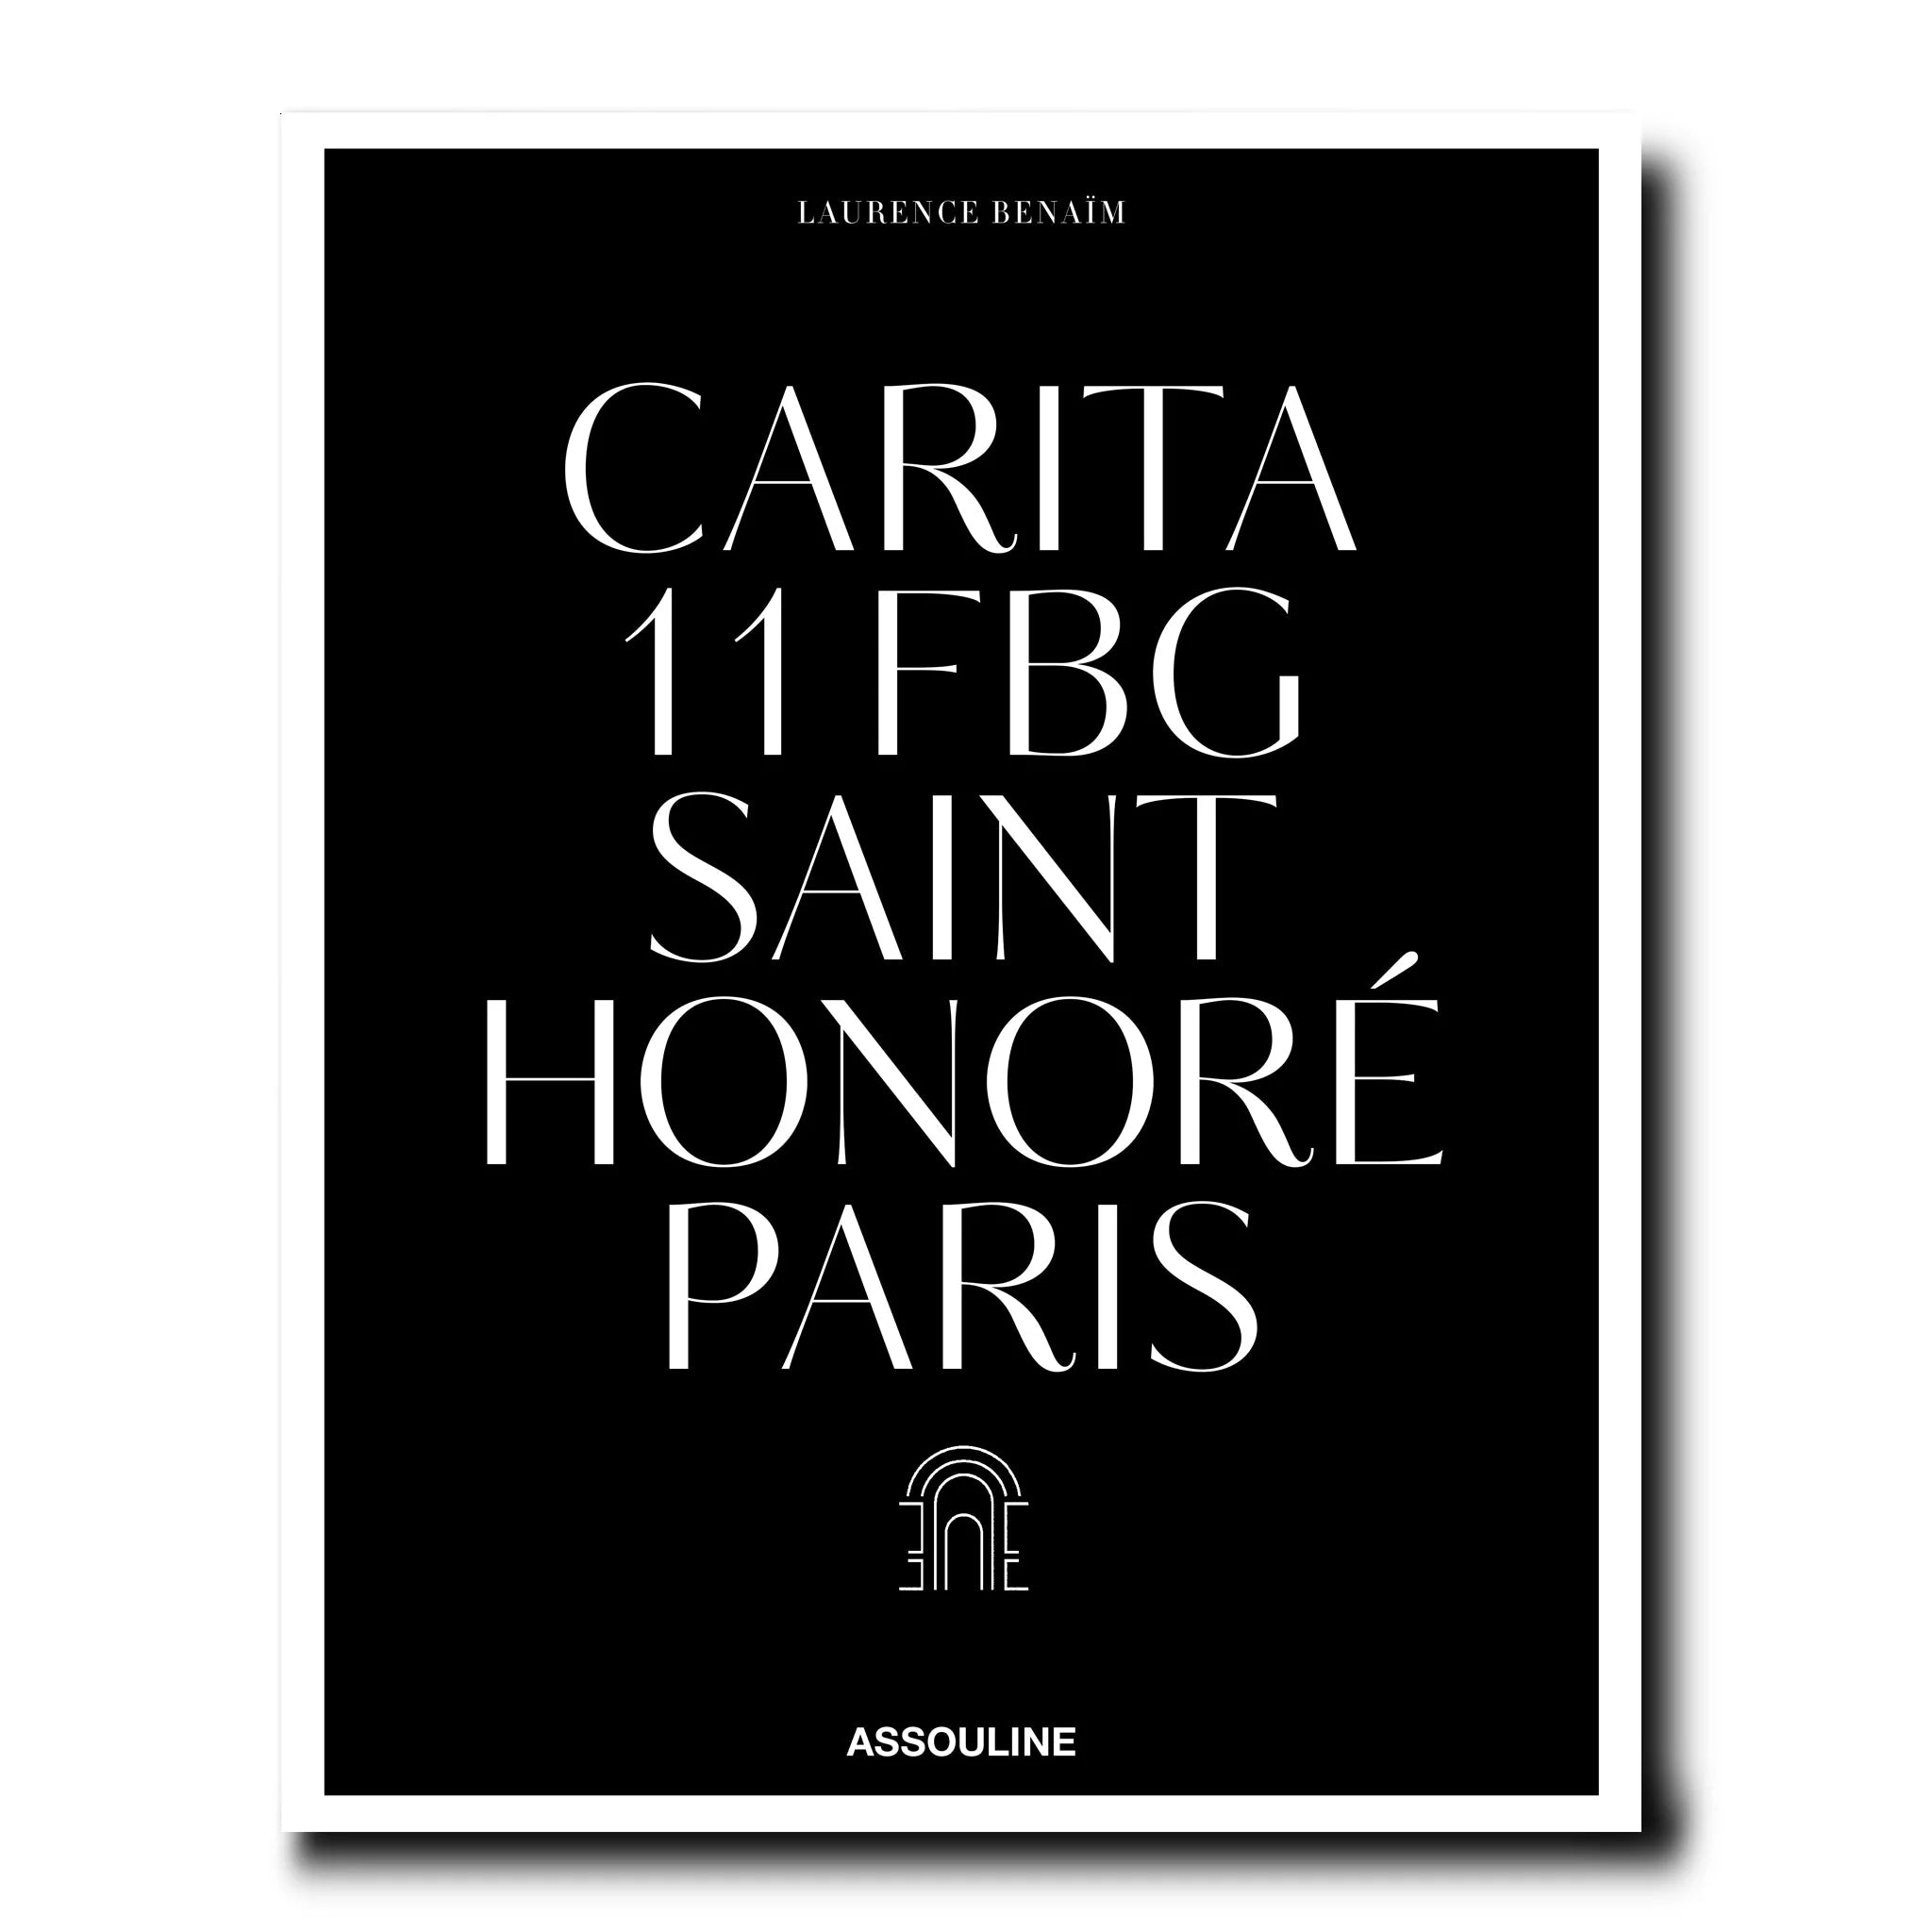 ASSOULINE Carita: 11 FBG Saint Honoré Paris by Laurence Benaïm